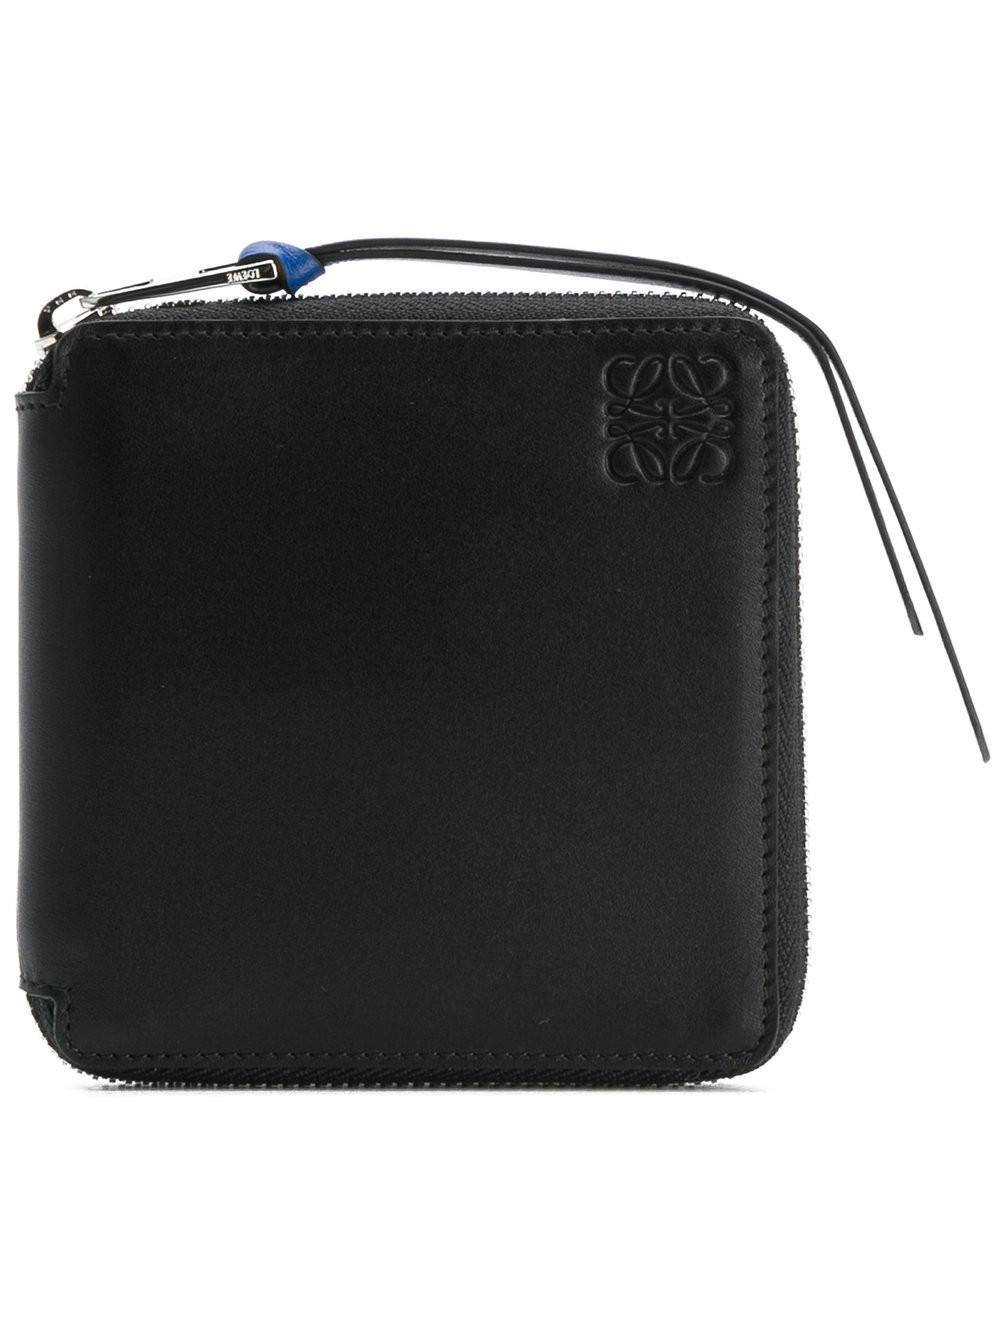 Loewe Zip Around Wallet in Black for Men - Lyst